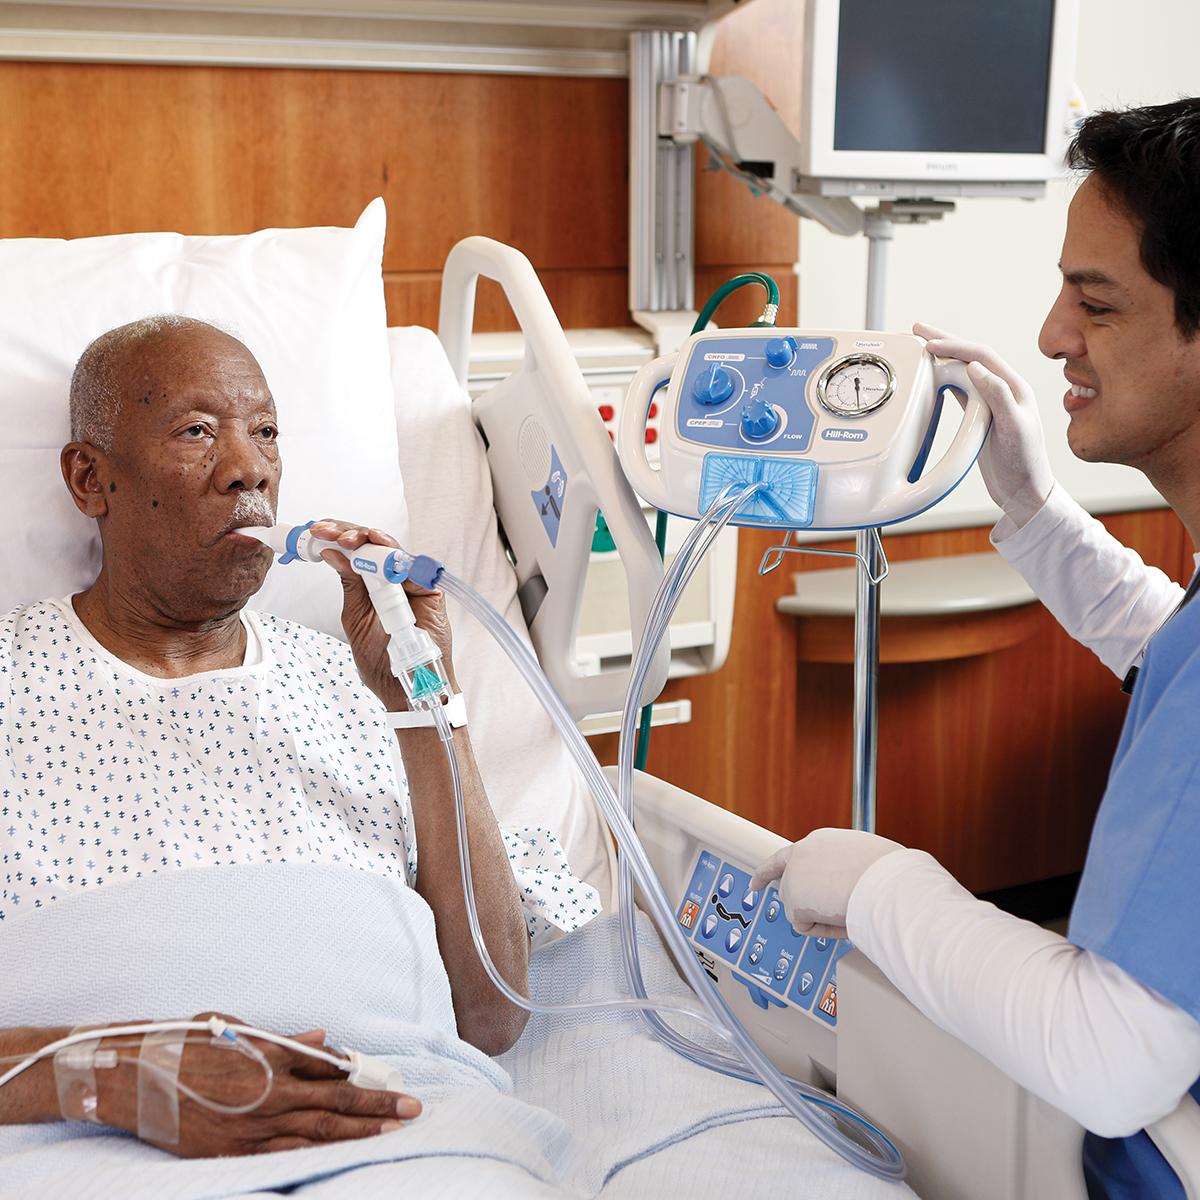 Un paziente anziano in un letto d'ospedale riceve la terapia mediante il sistema MetaNeb, con il medico accanto